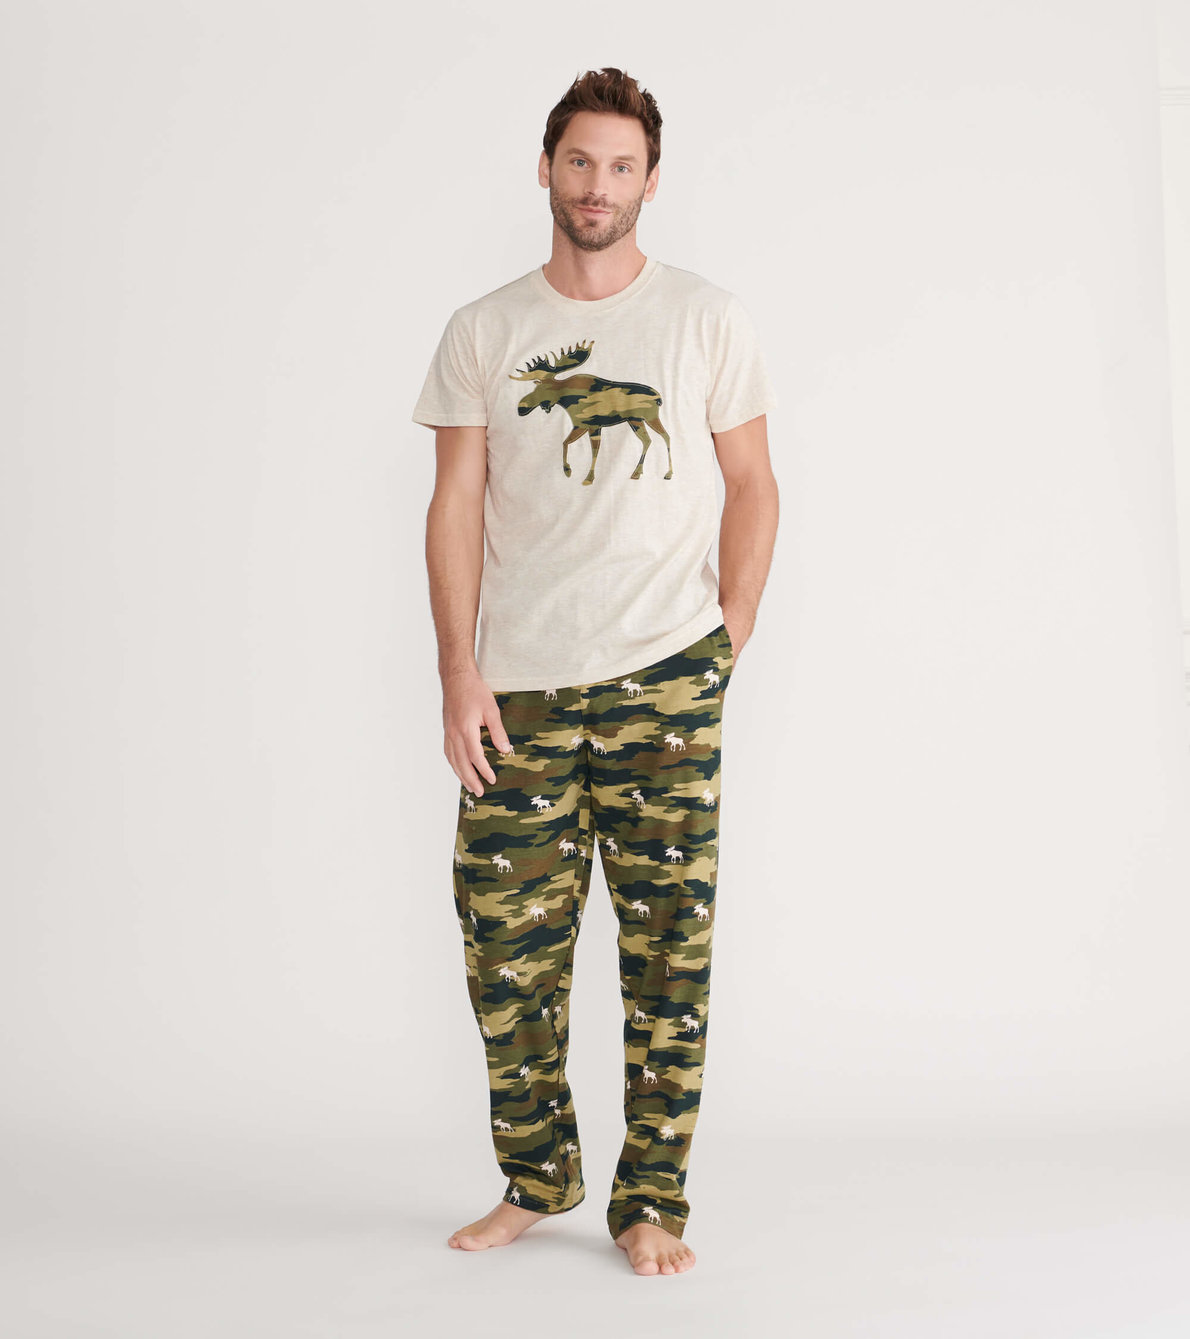 View larger image of Camooseflage Men's Jersey Pajama Pants